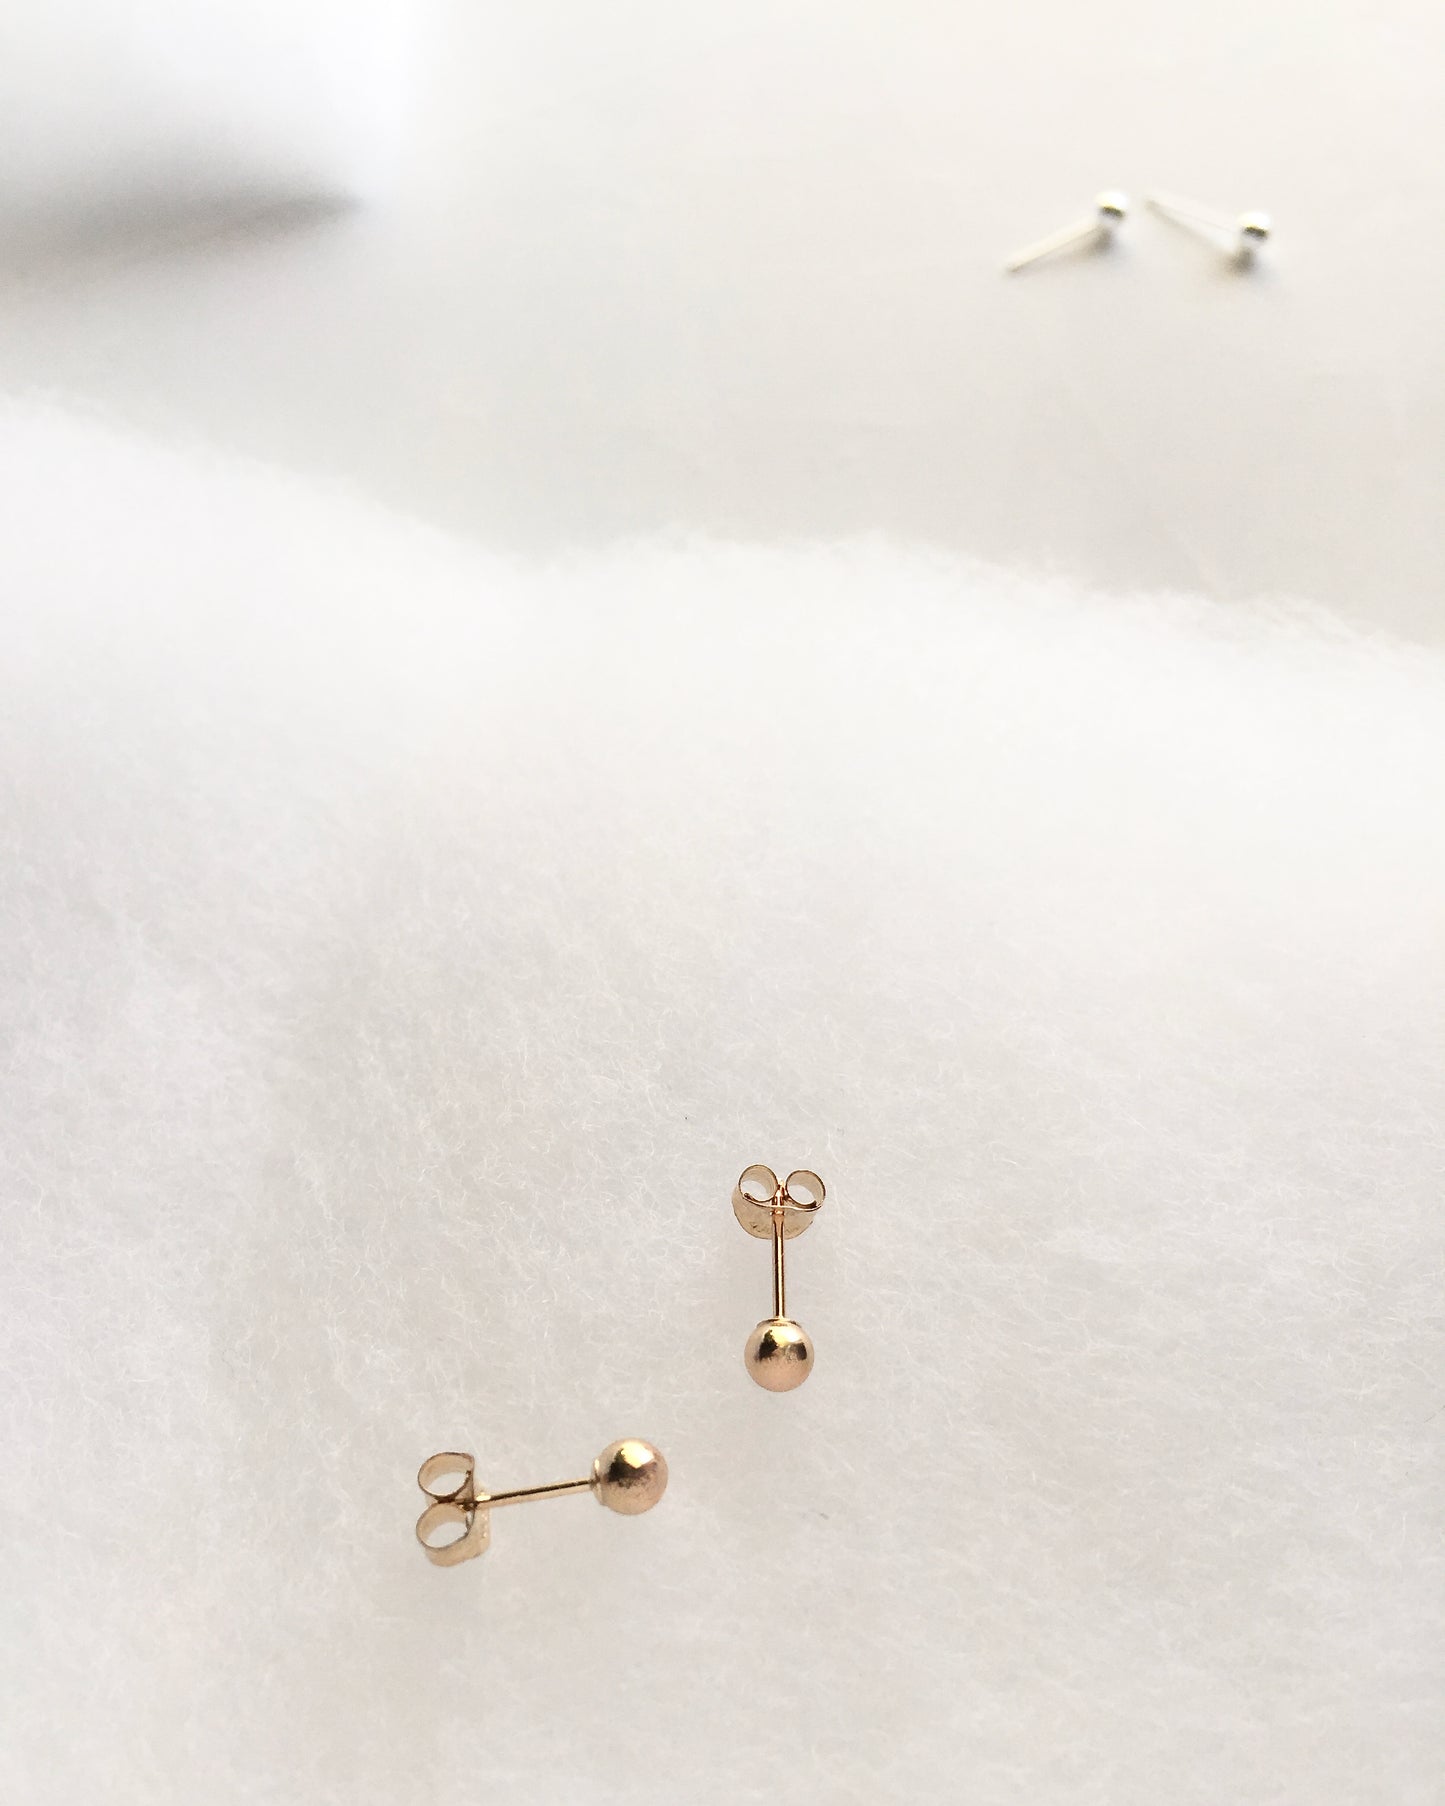 Minimalist Ball Stud Earrings | Dainty Stud Earrings In Gold Filled or Sterling Silver | IB Jewelry